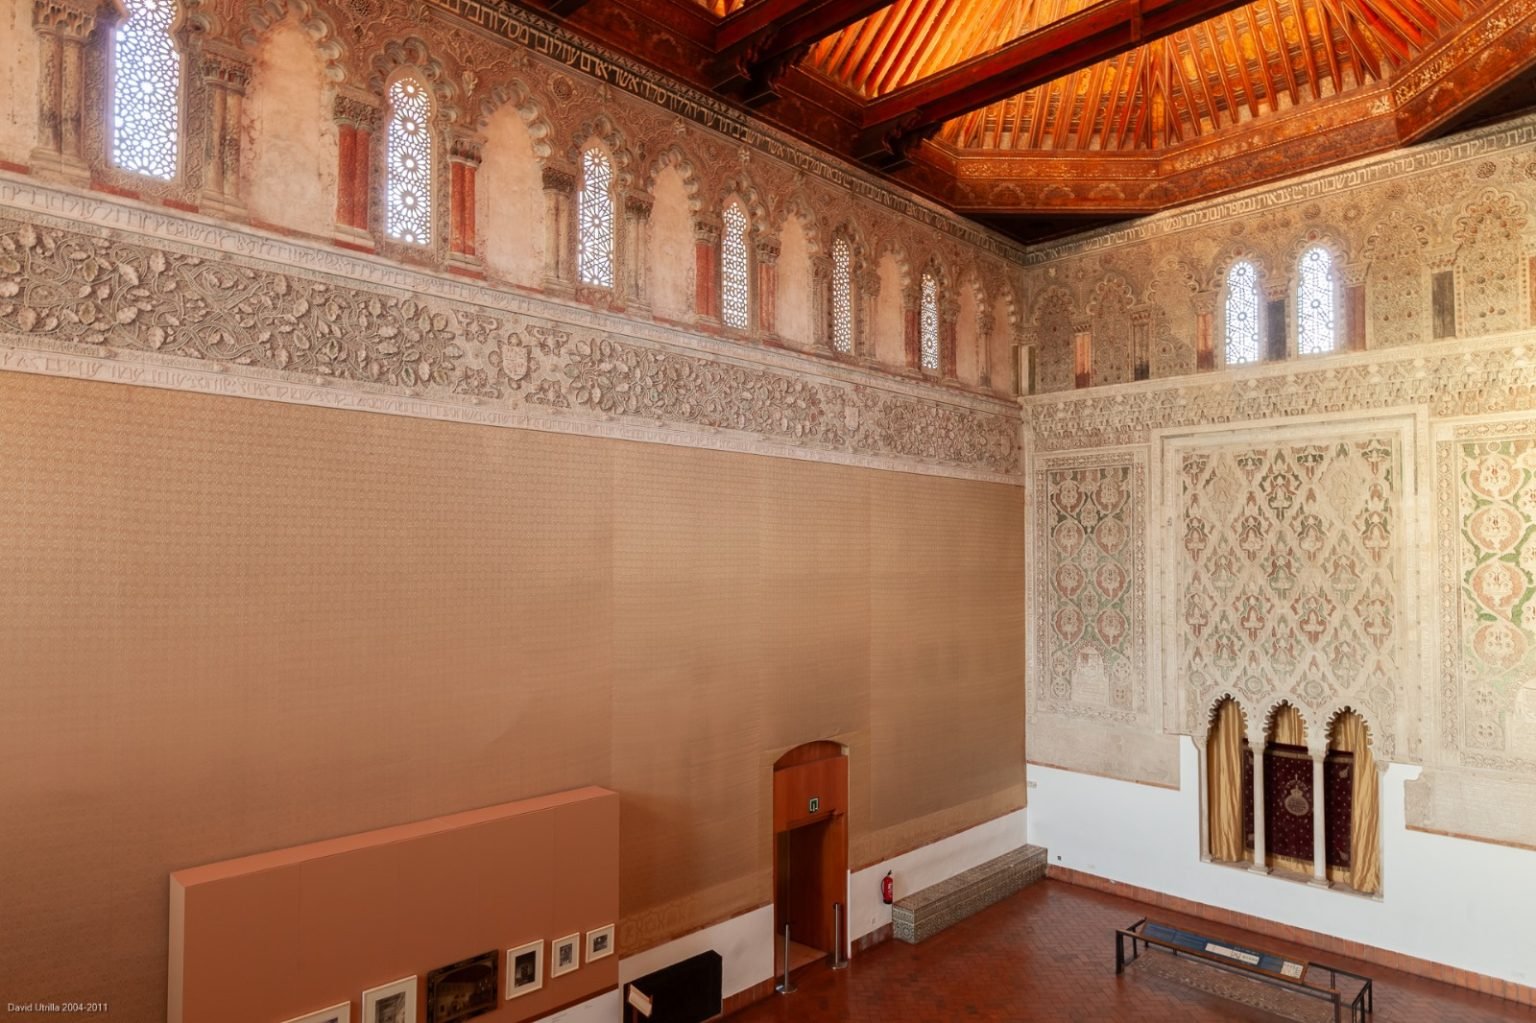 Gran Sala de Oración. Museo Sefardí, Toledo. Foto: David Utrilla